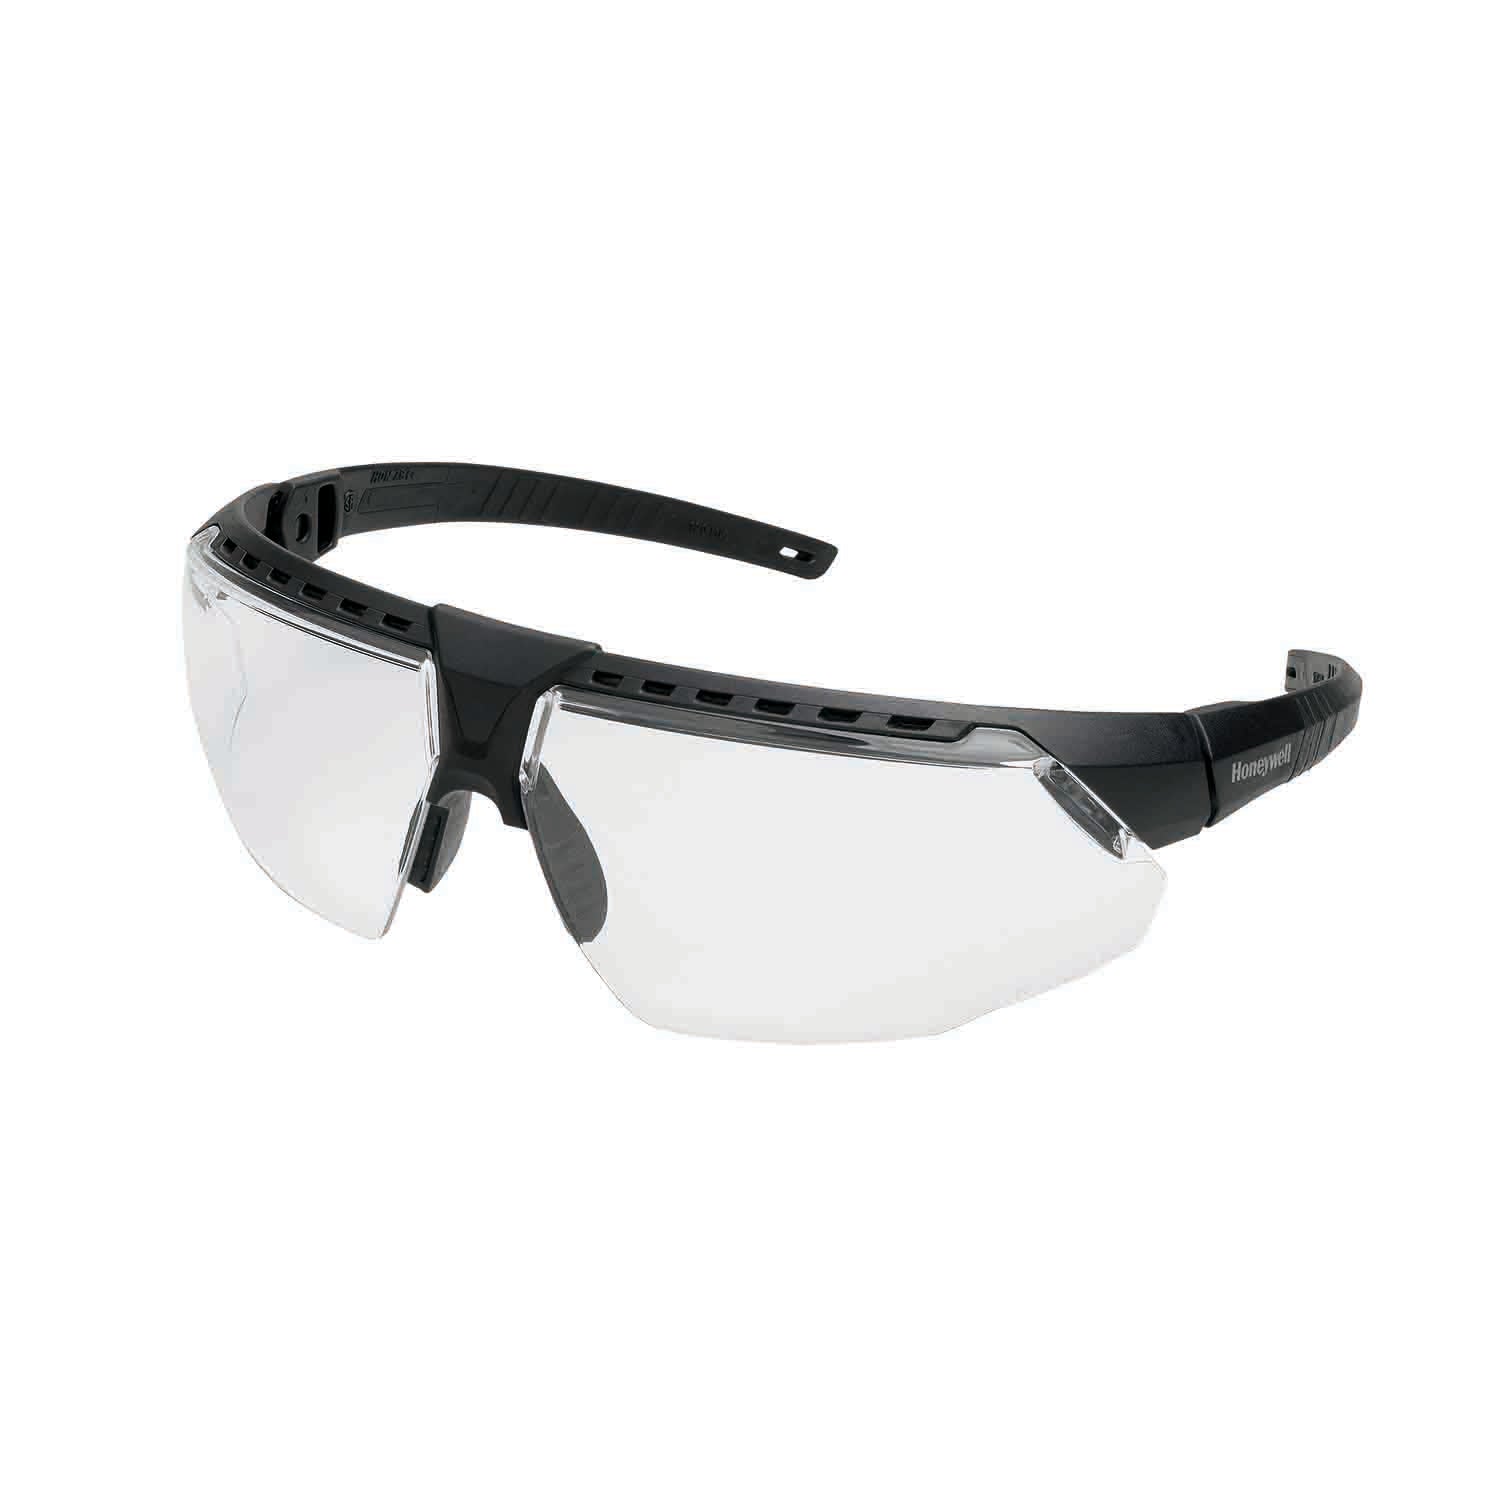 Honeywell AVATAR Safety Glasses Black Frame Clear Lens